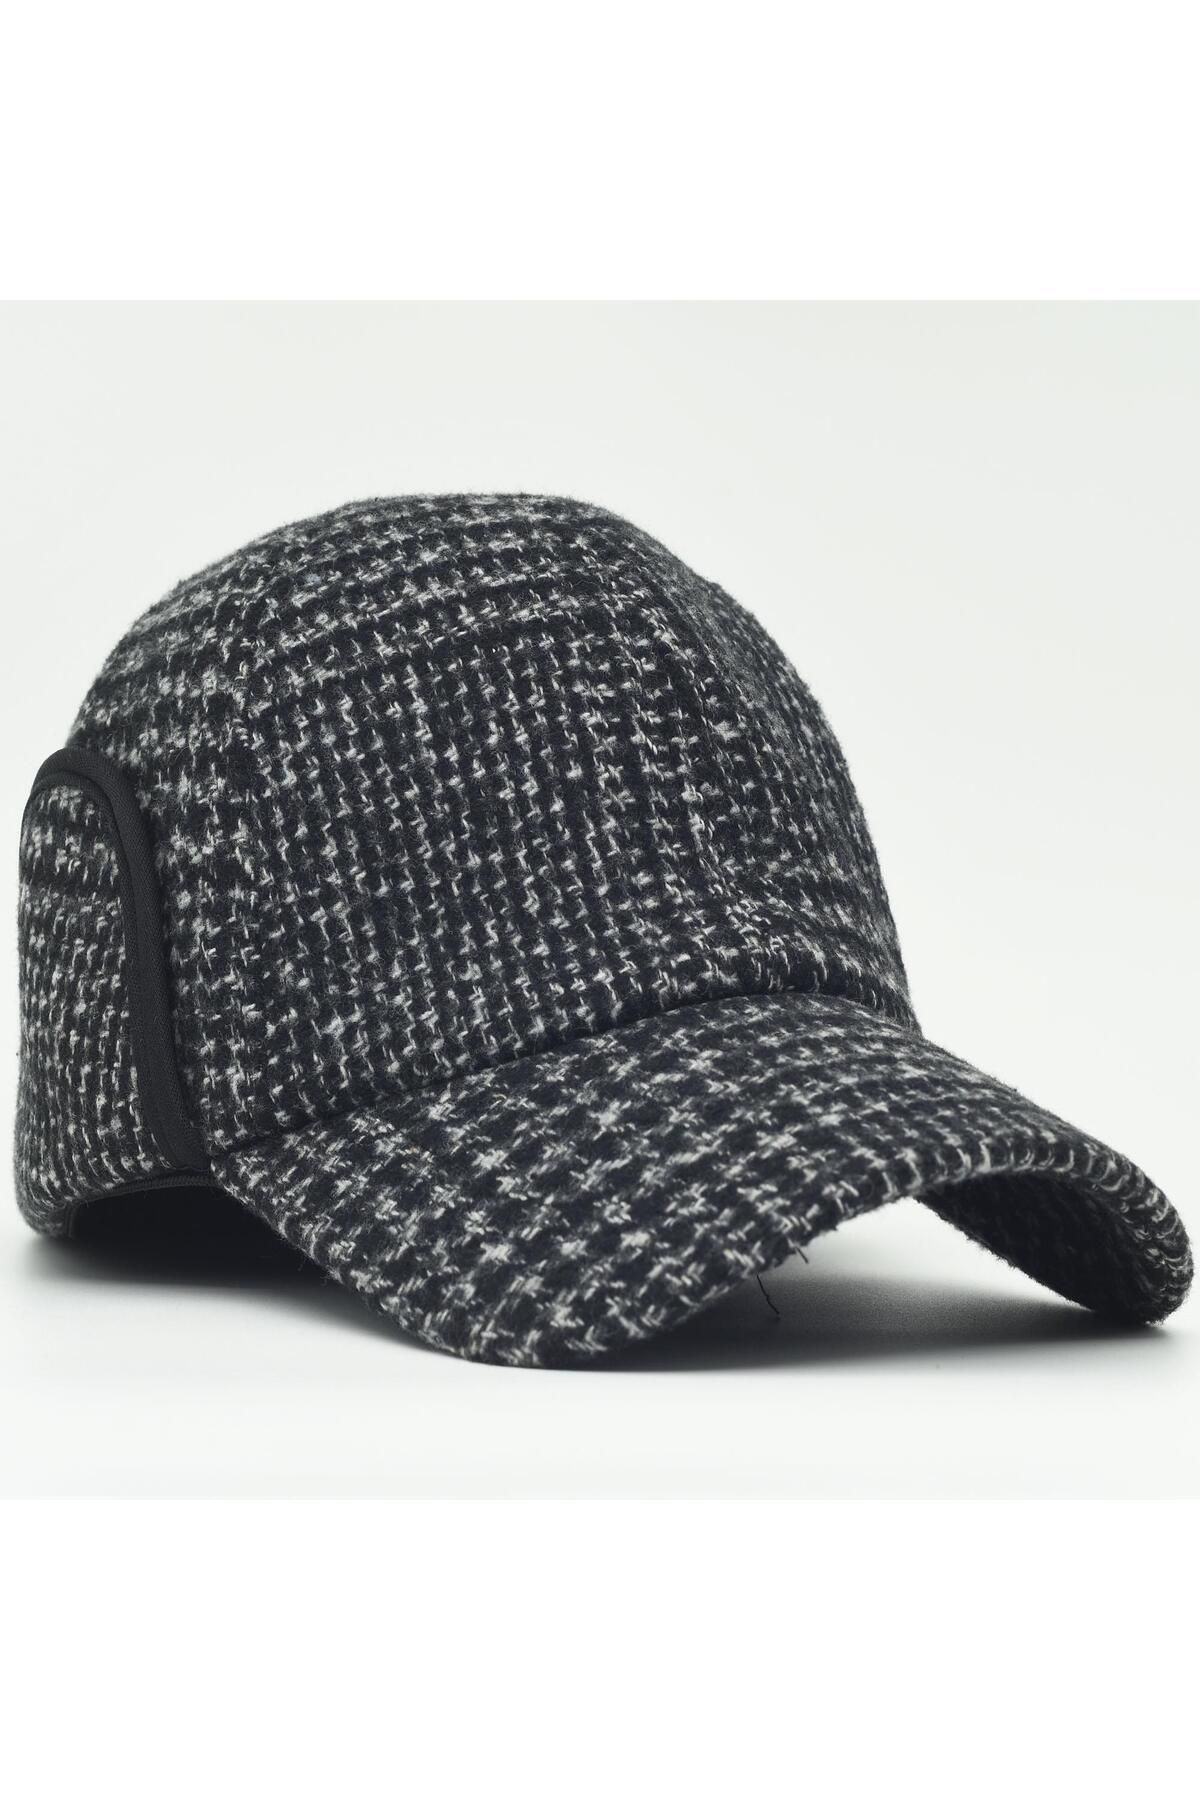 şapkadan Kışlık Kep Siyah Polarlı Avcı Şapka Kulaklıklı Şapka